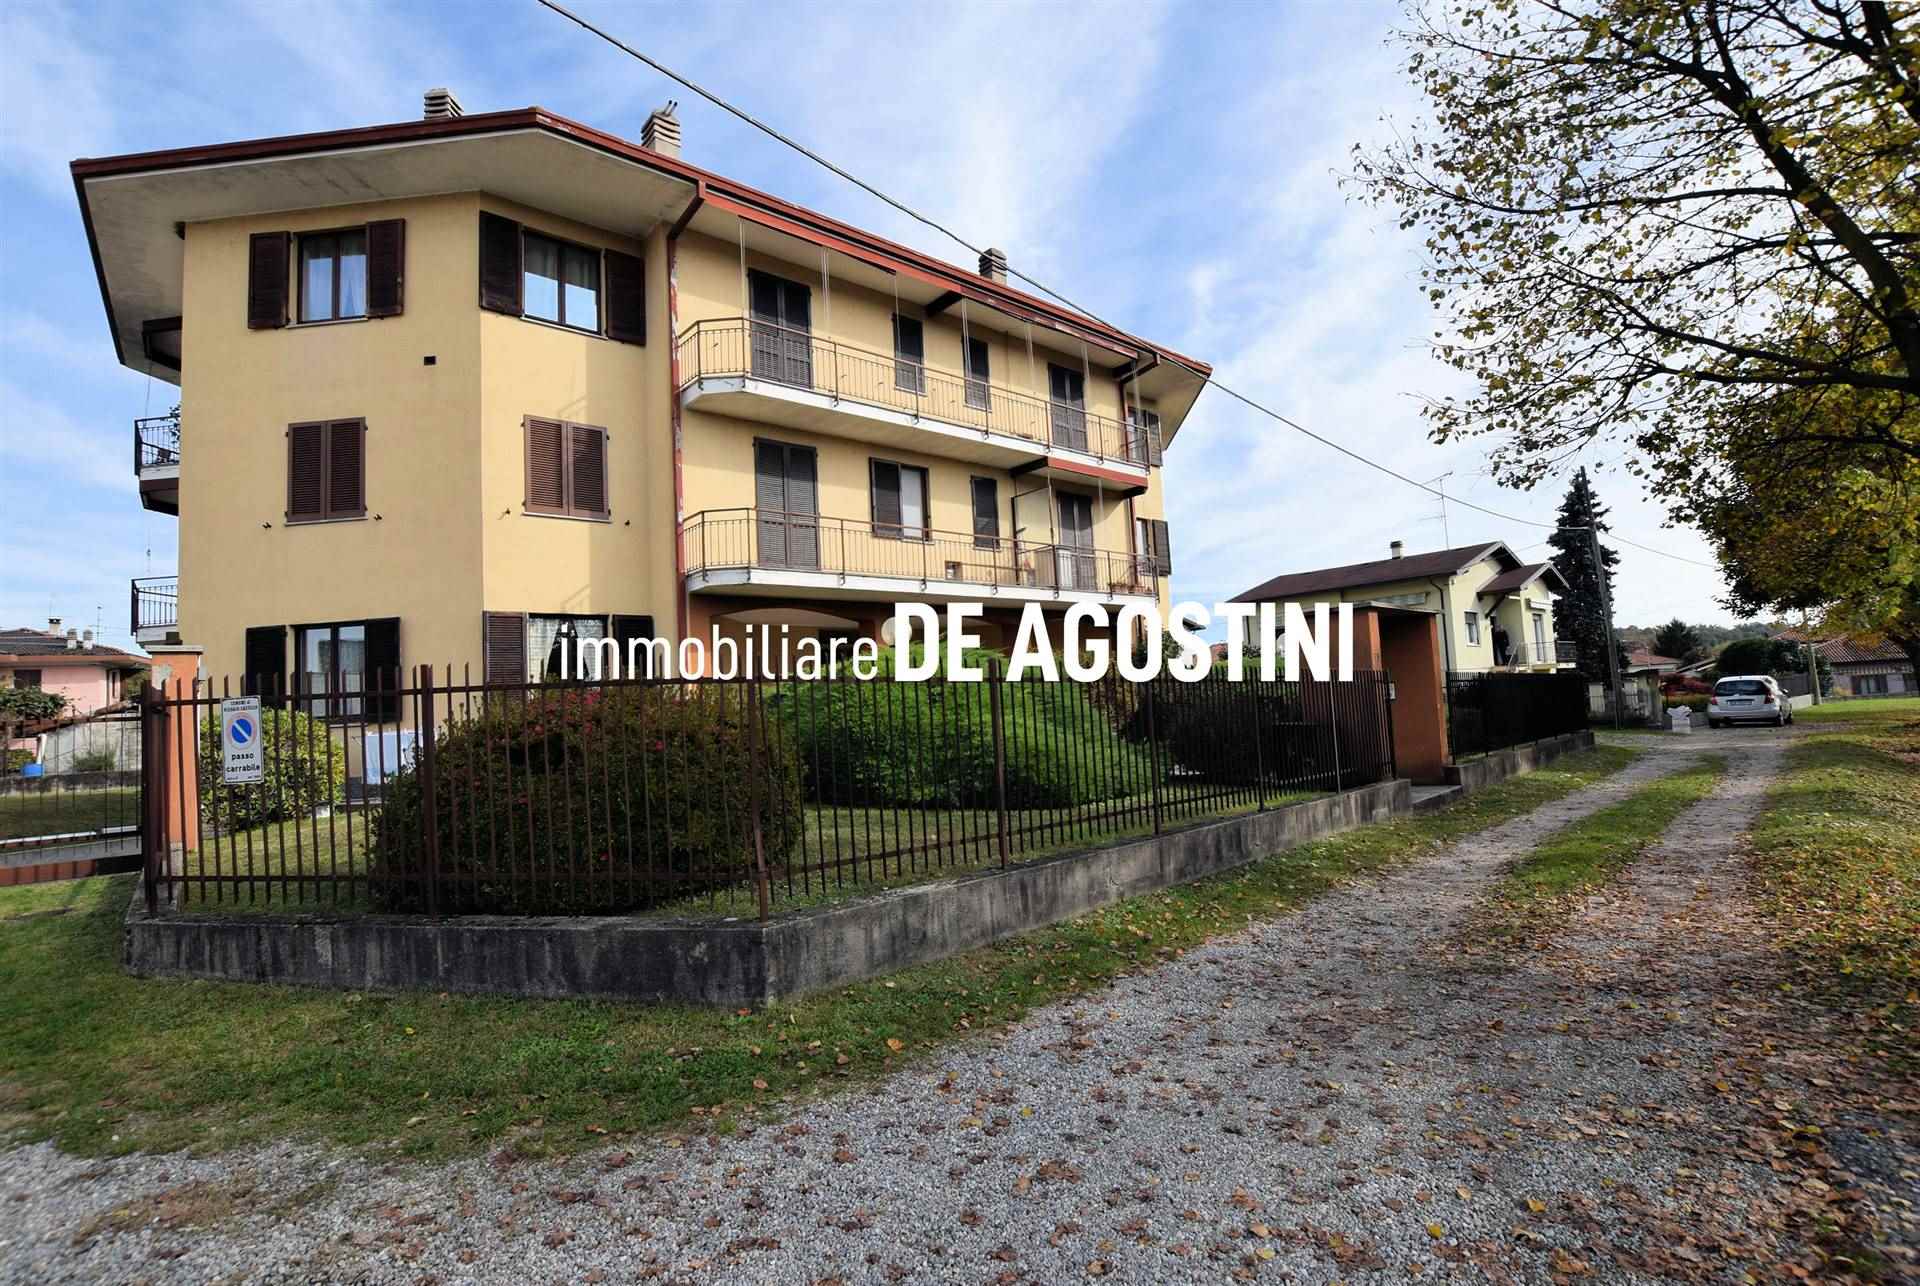 Appartamento in vendita a Oleggio Castello, 3 locali, prezzo € 115.000 | CambioCasa.it